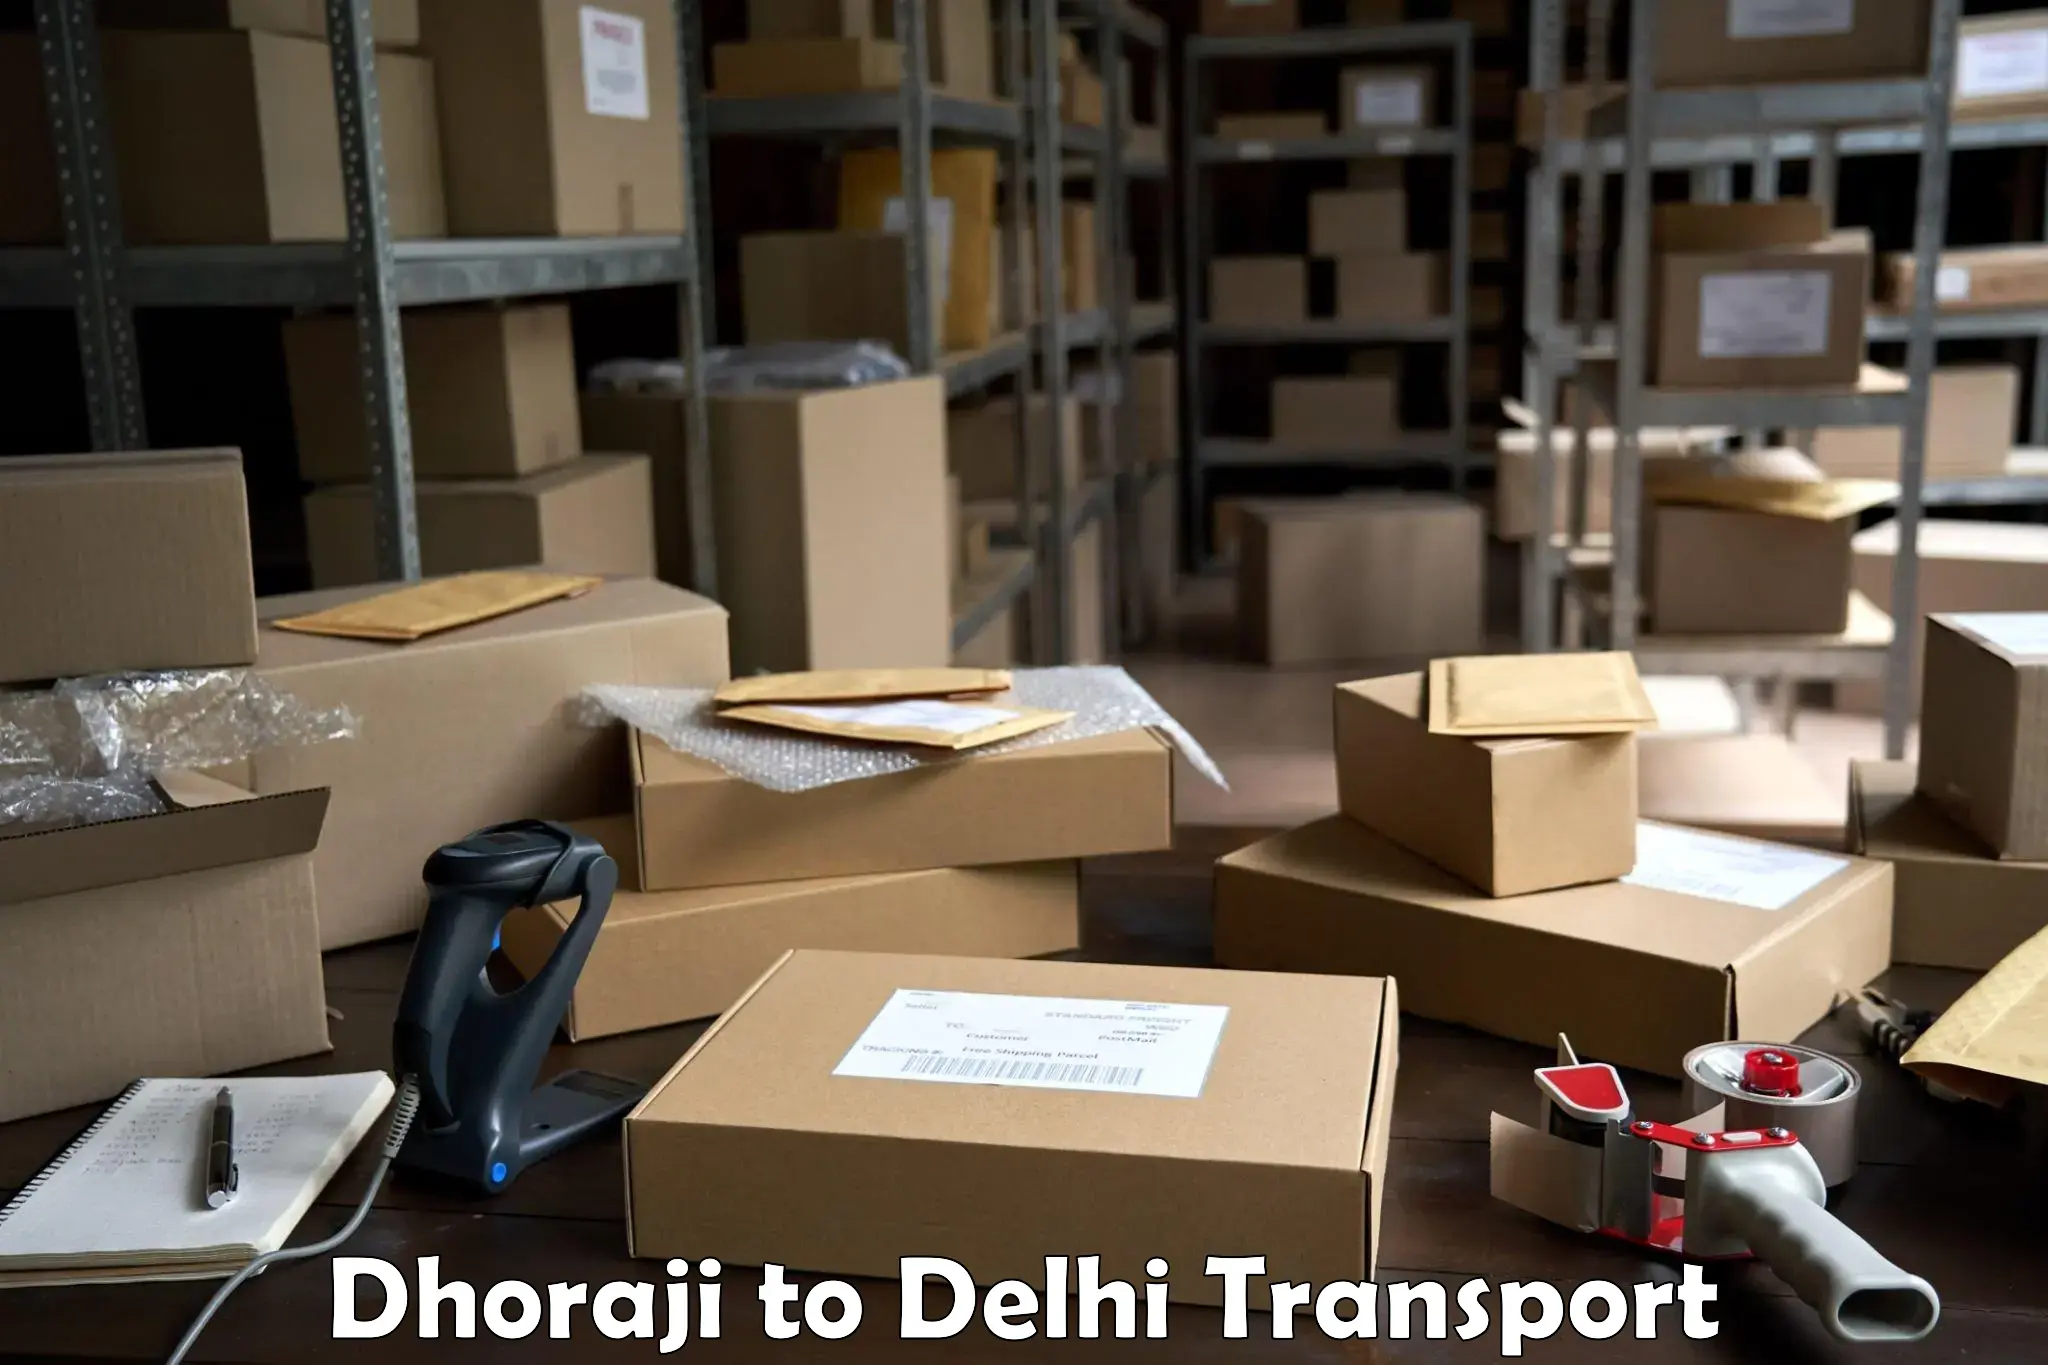 Bike transport service Dhoraji to University of Delhi